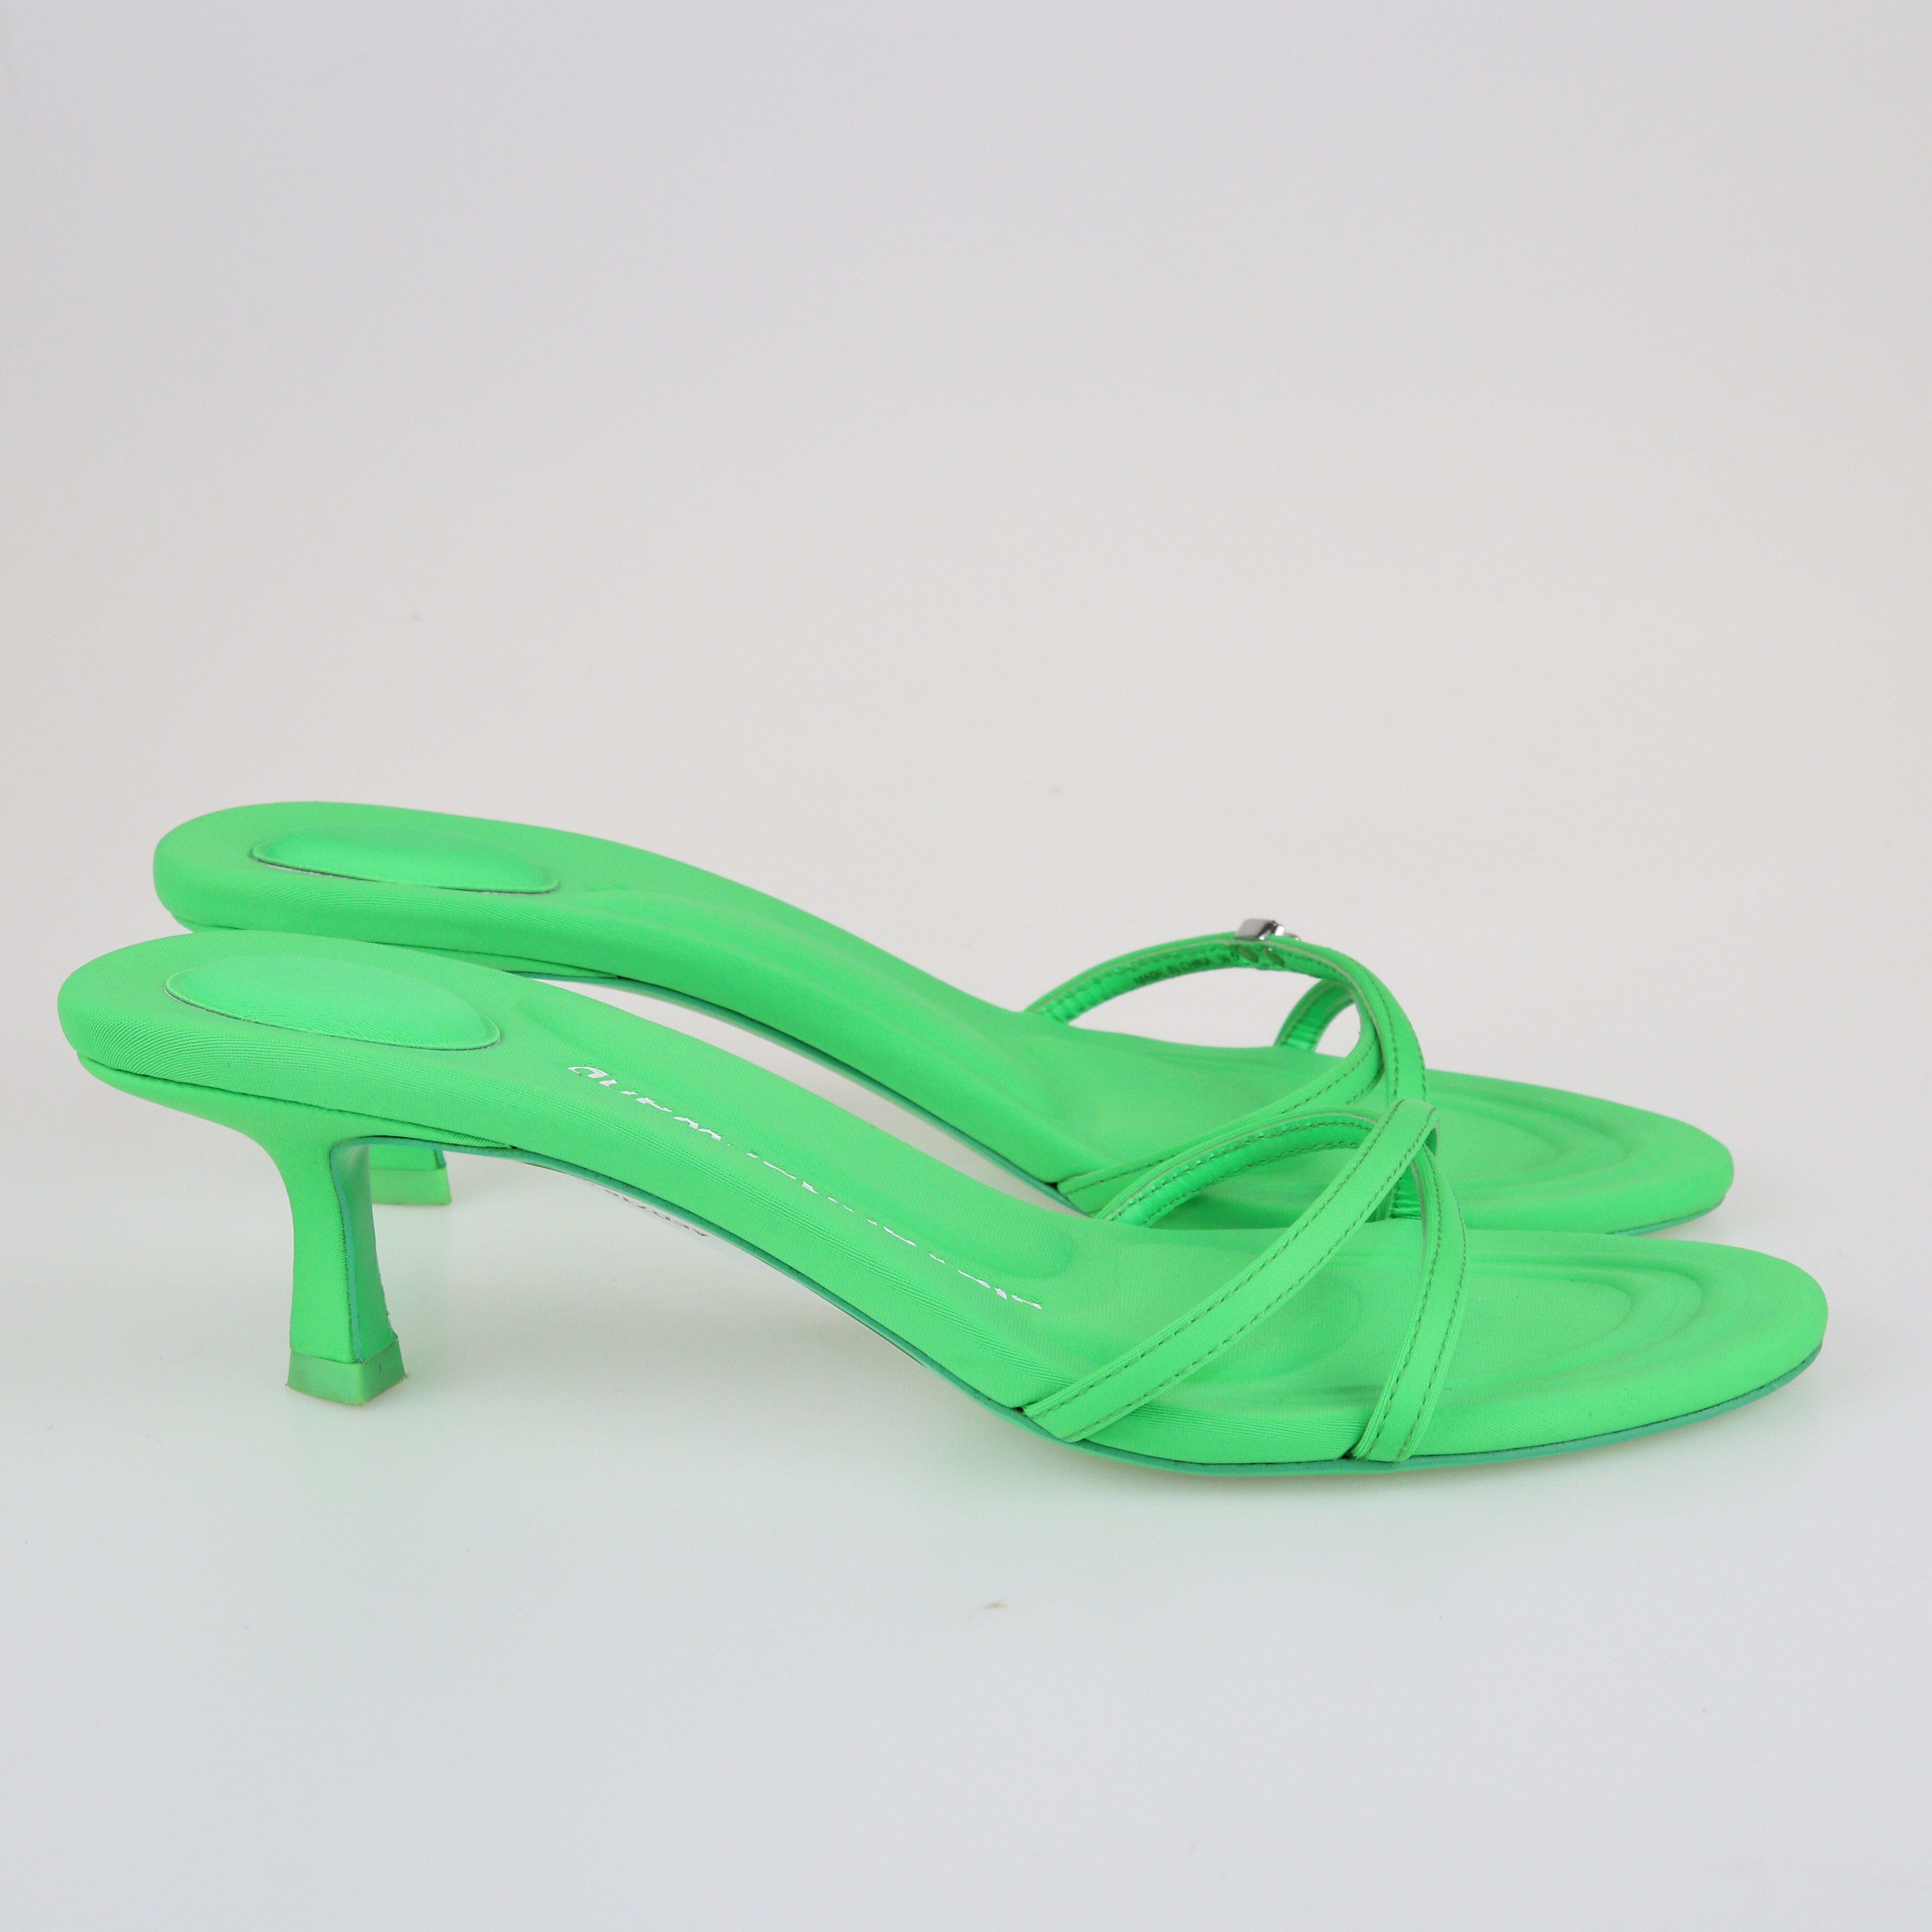 Green Dahlia High Heel Sandals Shoes Alenxader Wang 